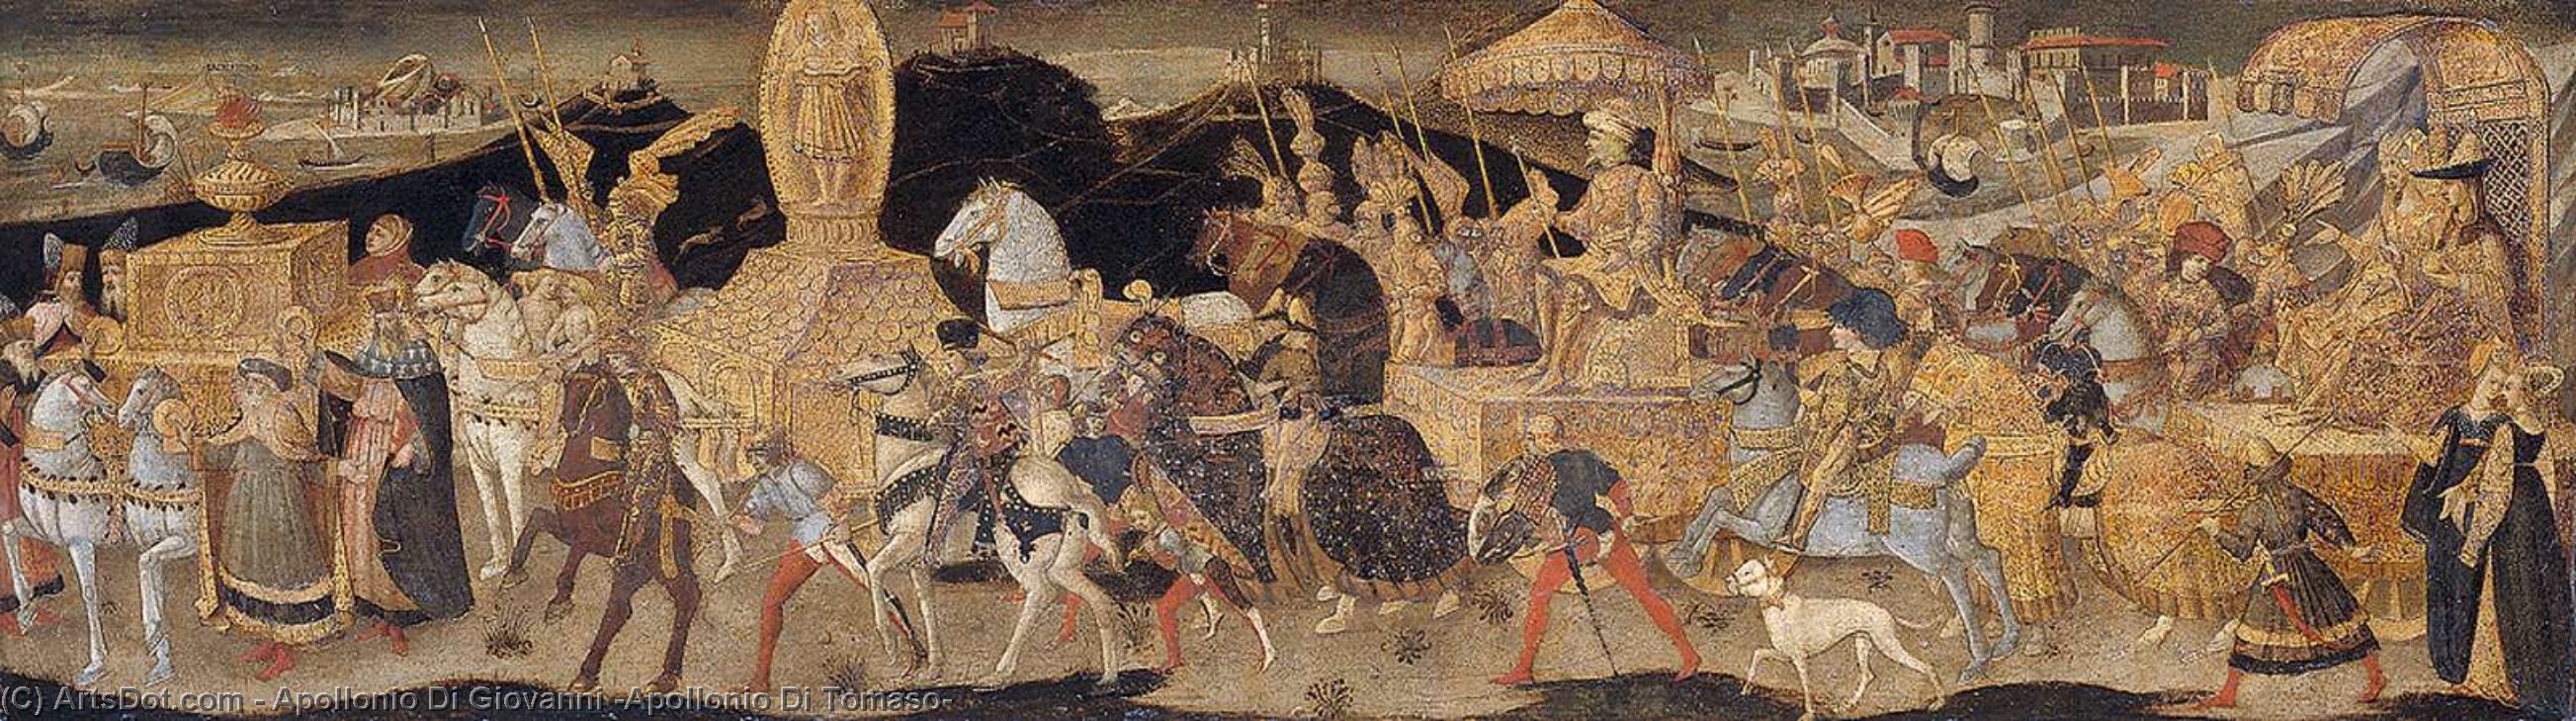 WikiOO.org - Encyclopedia of Fine Arts - Lukisan, Artwork Apollonio Di Giovanni (Apollonio Di Tomaso) - Front panel of a cassone